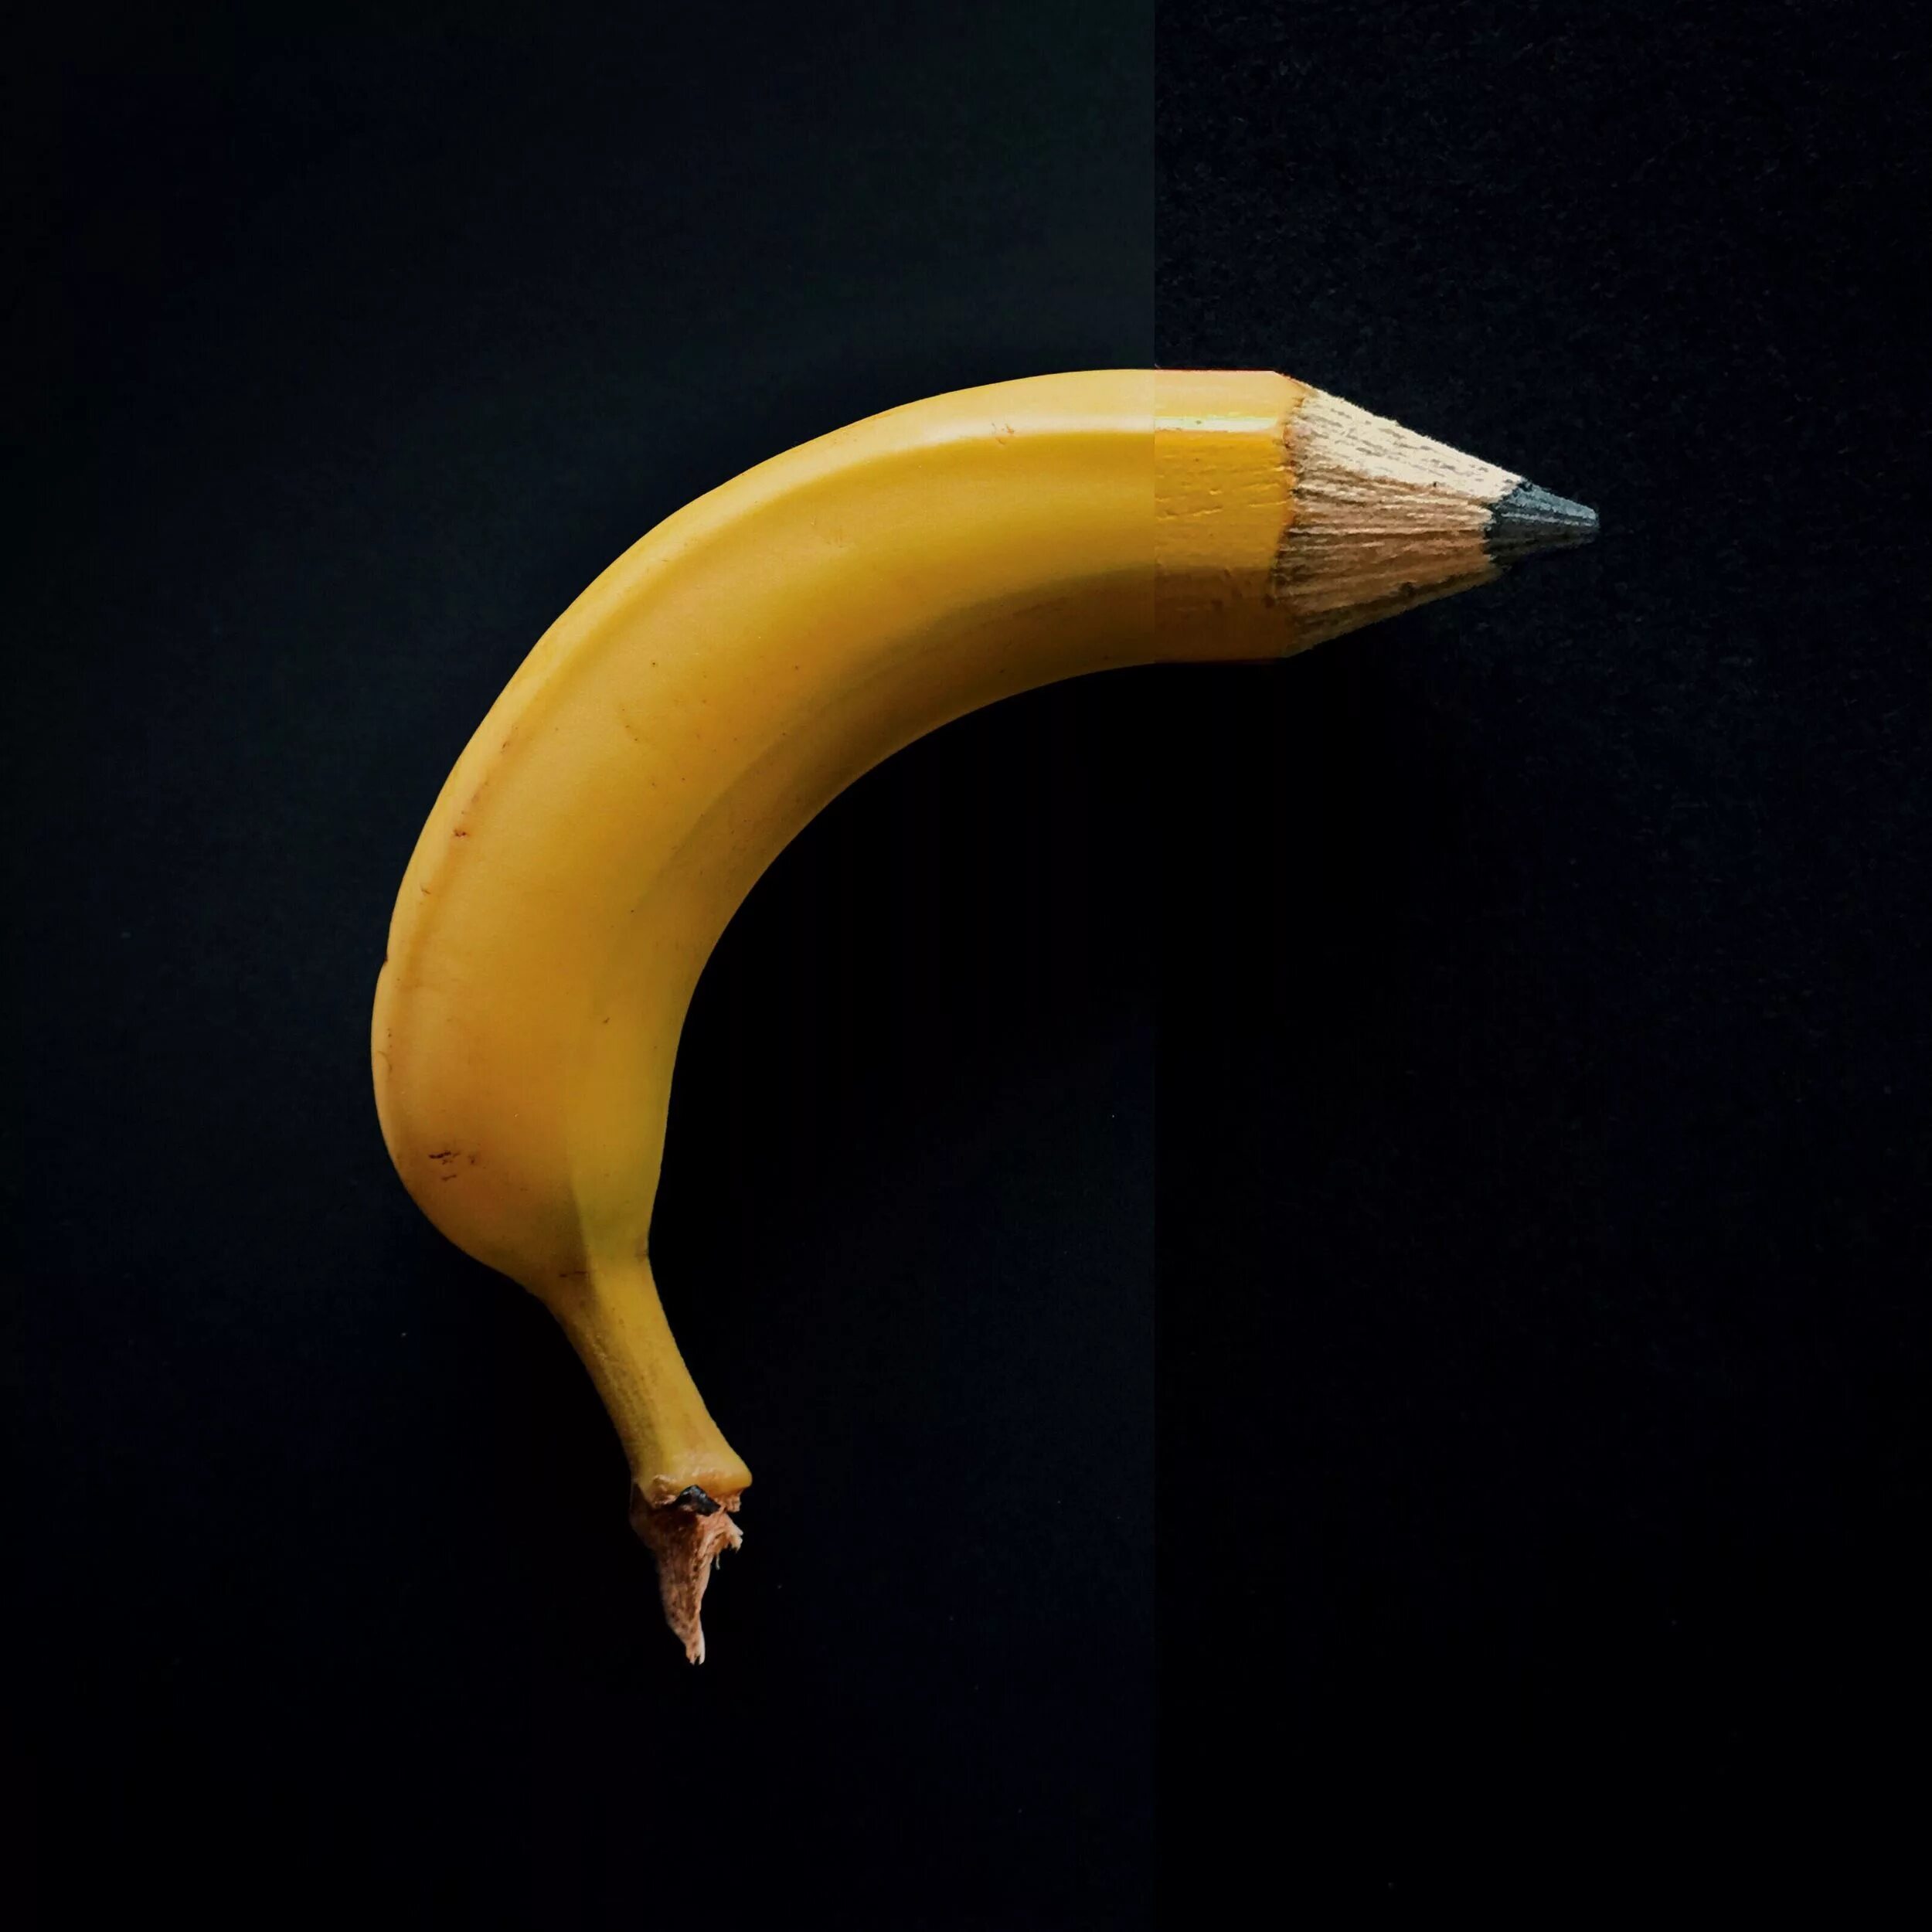 Фотограф Stephen MCMENNAMY. Необычные предметы. Банана пенсил